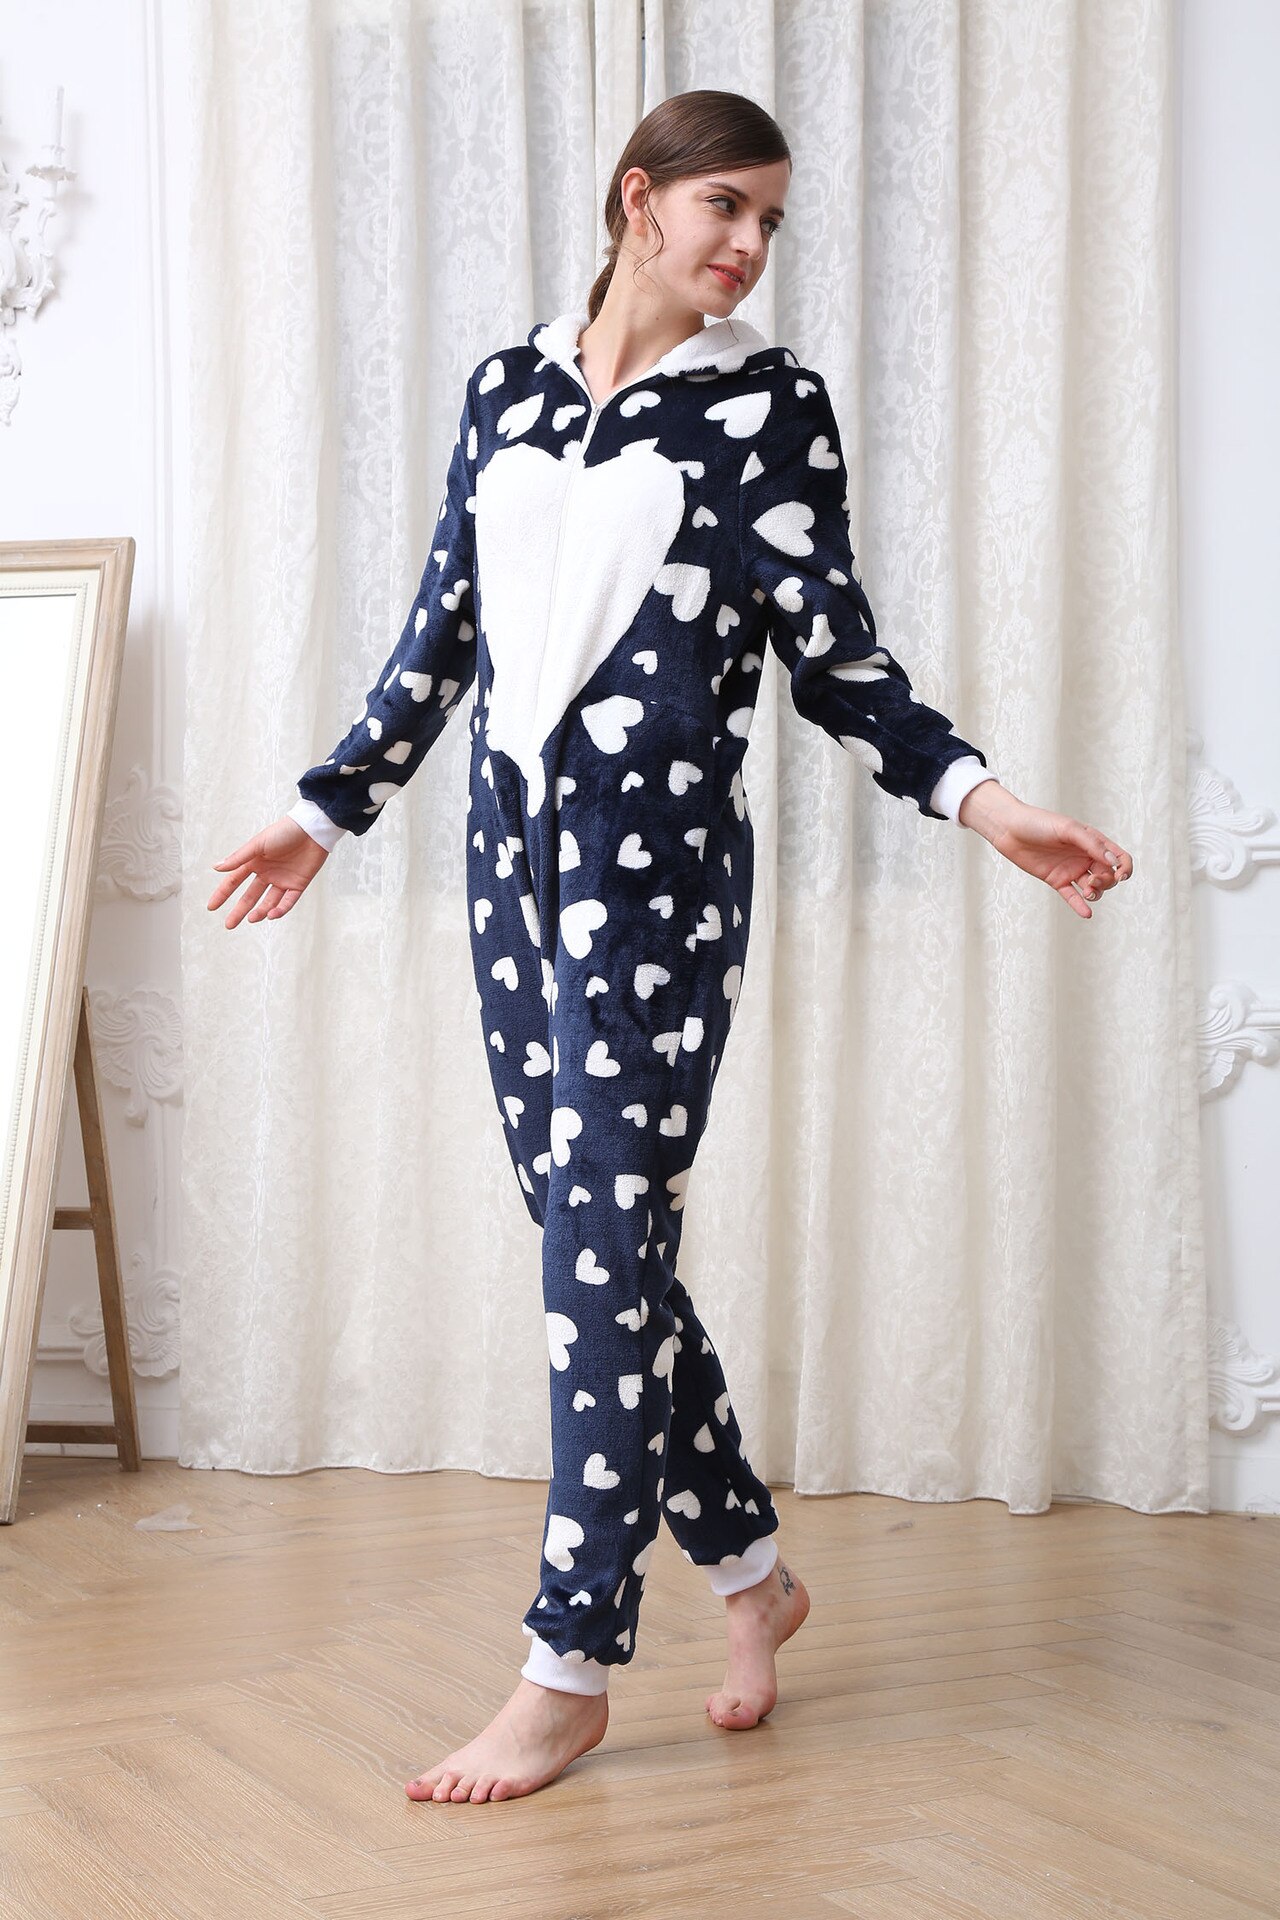 Women Pajamas Zipper Hooded Sleepwear Jumpsuit Plush Onesie Love Print Casual Nightgown Full Sleeve Loose Rompers Nightwear